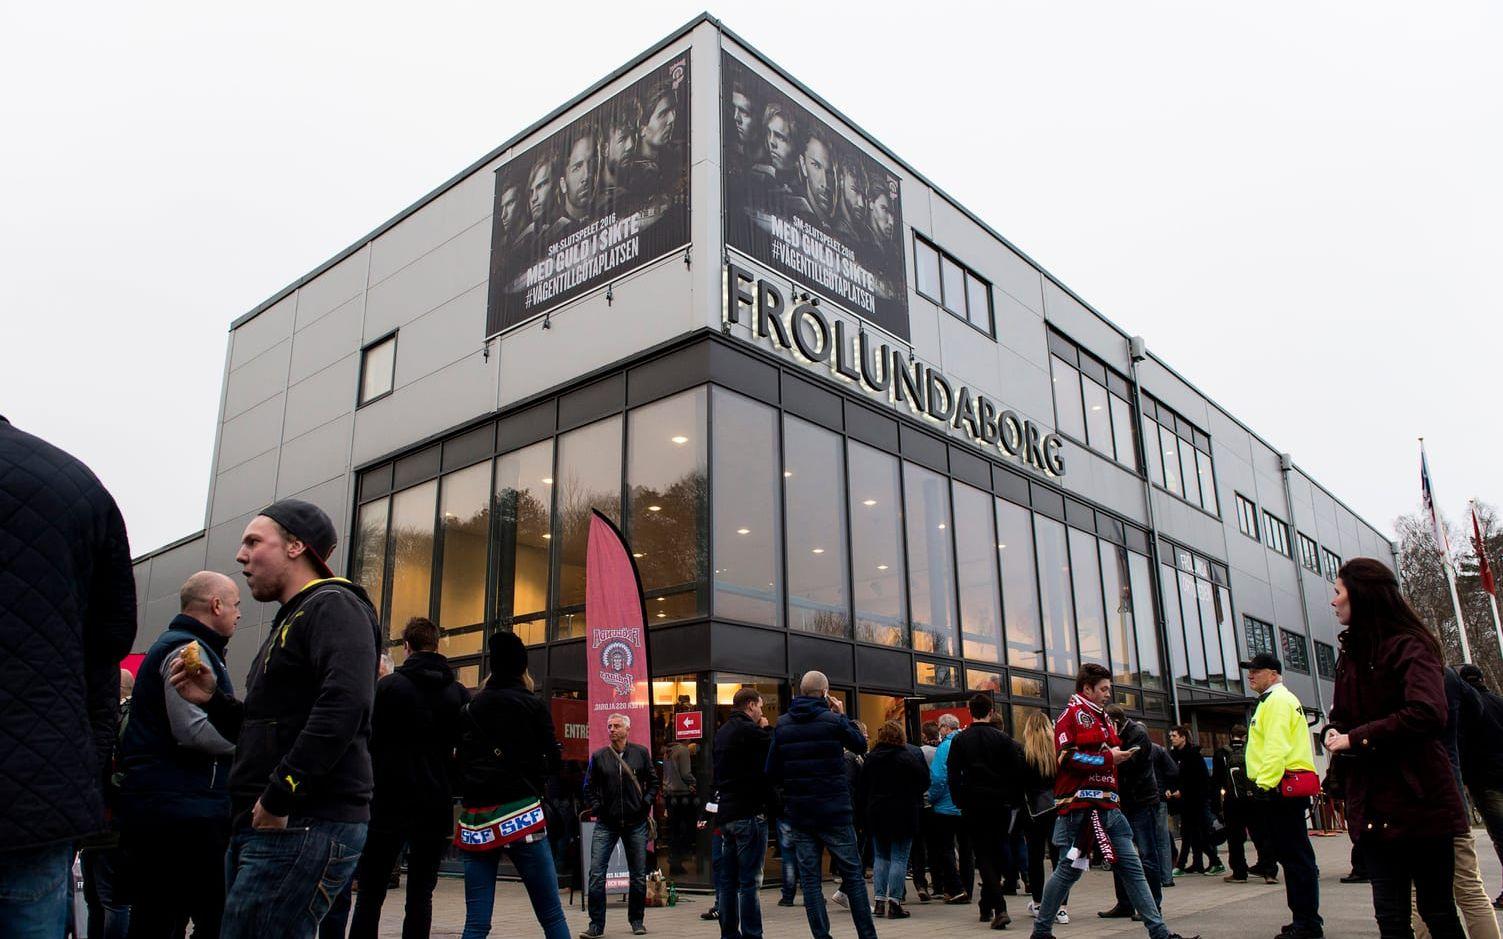 Frölundaborg tar 6 044 åskådare. När Frölunda möter Växjö på lördag lär det vara slutsålt. Bild: Bildbyrån